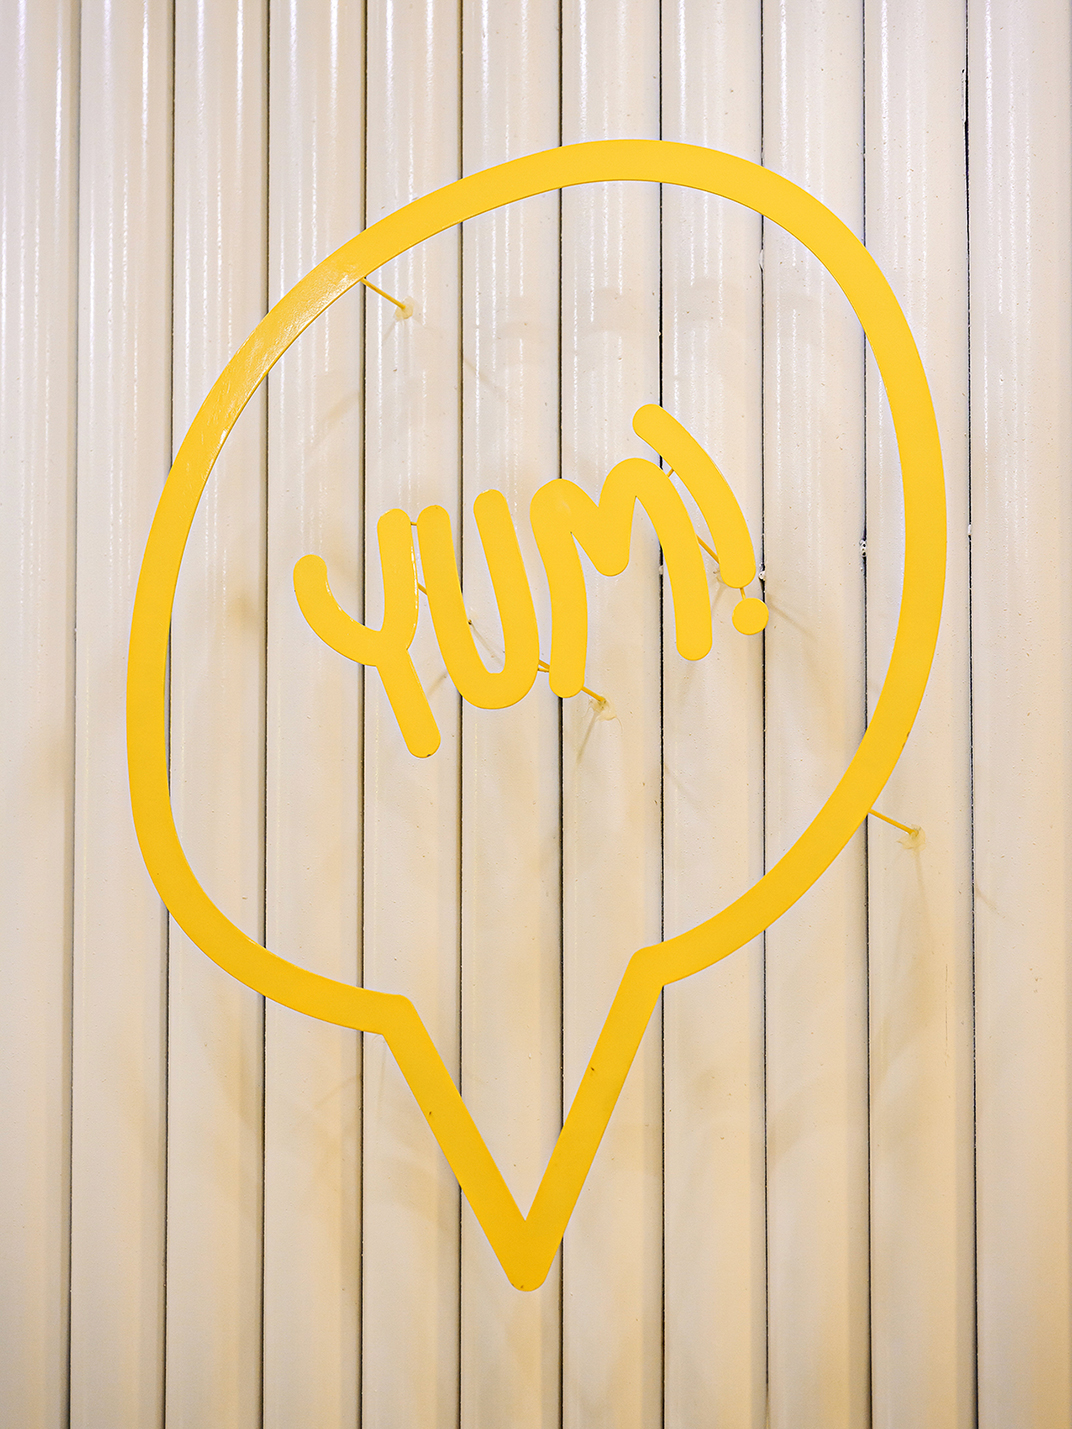 超可爱的餐厅灵感来自一层融化的奶酪 越南 北京 深圳 上海 北京 广州 武汉 咖啡店 餐饮商业 logo设计 vi设计 空间设计